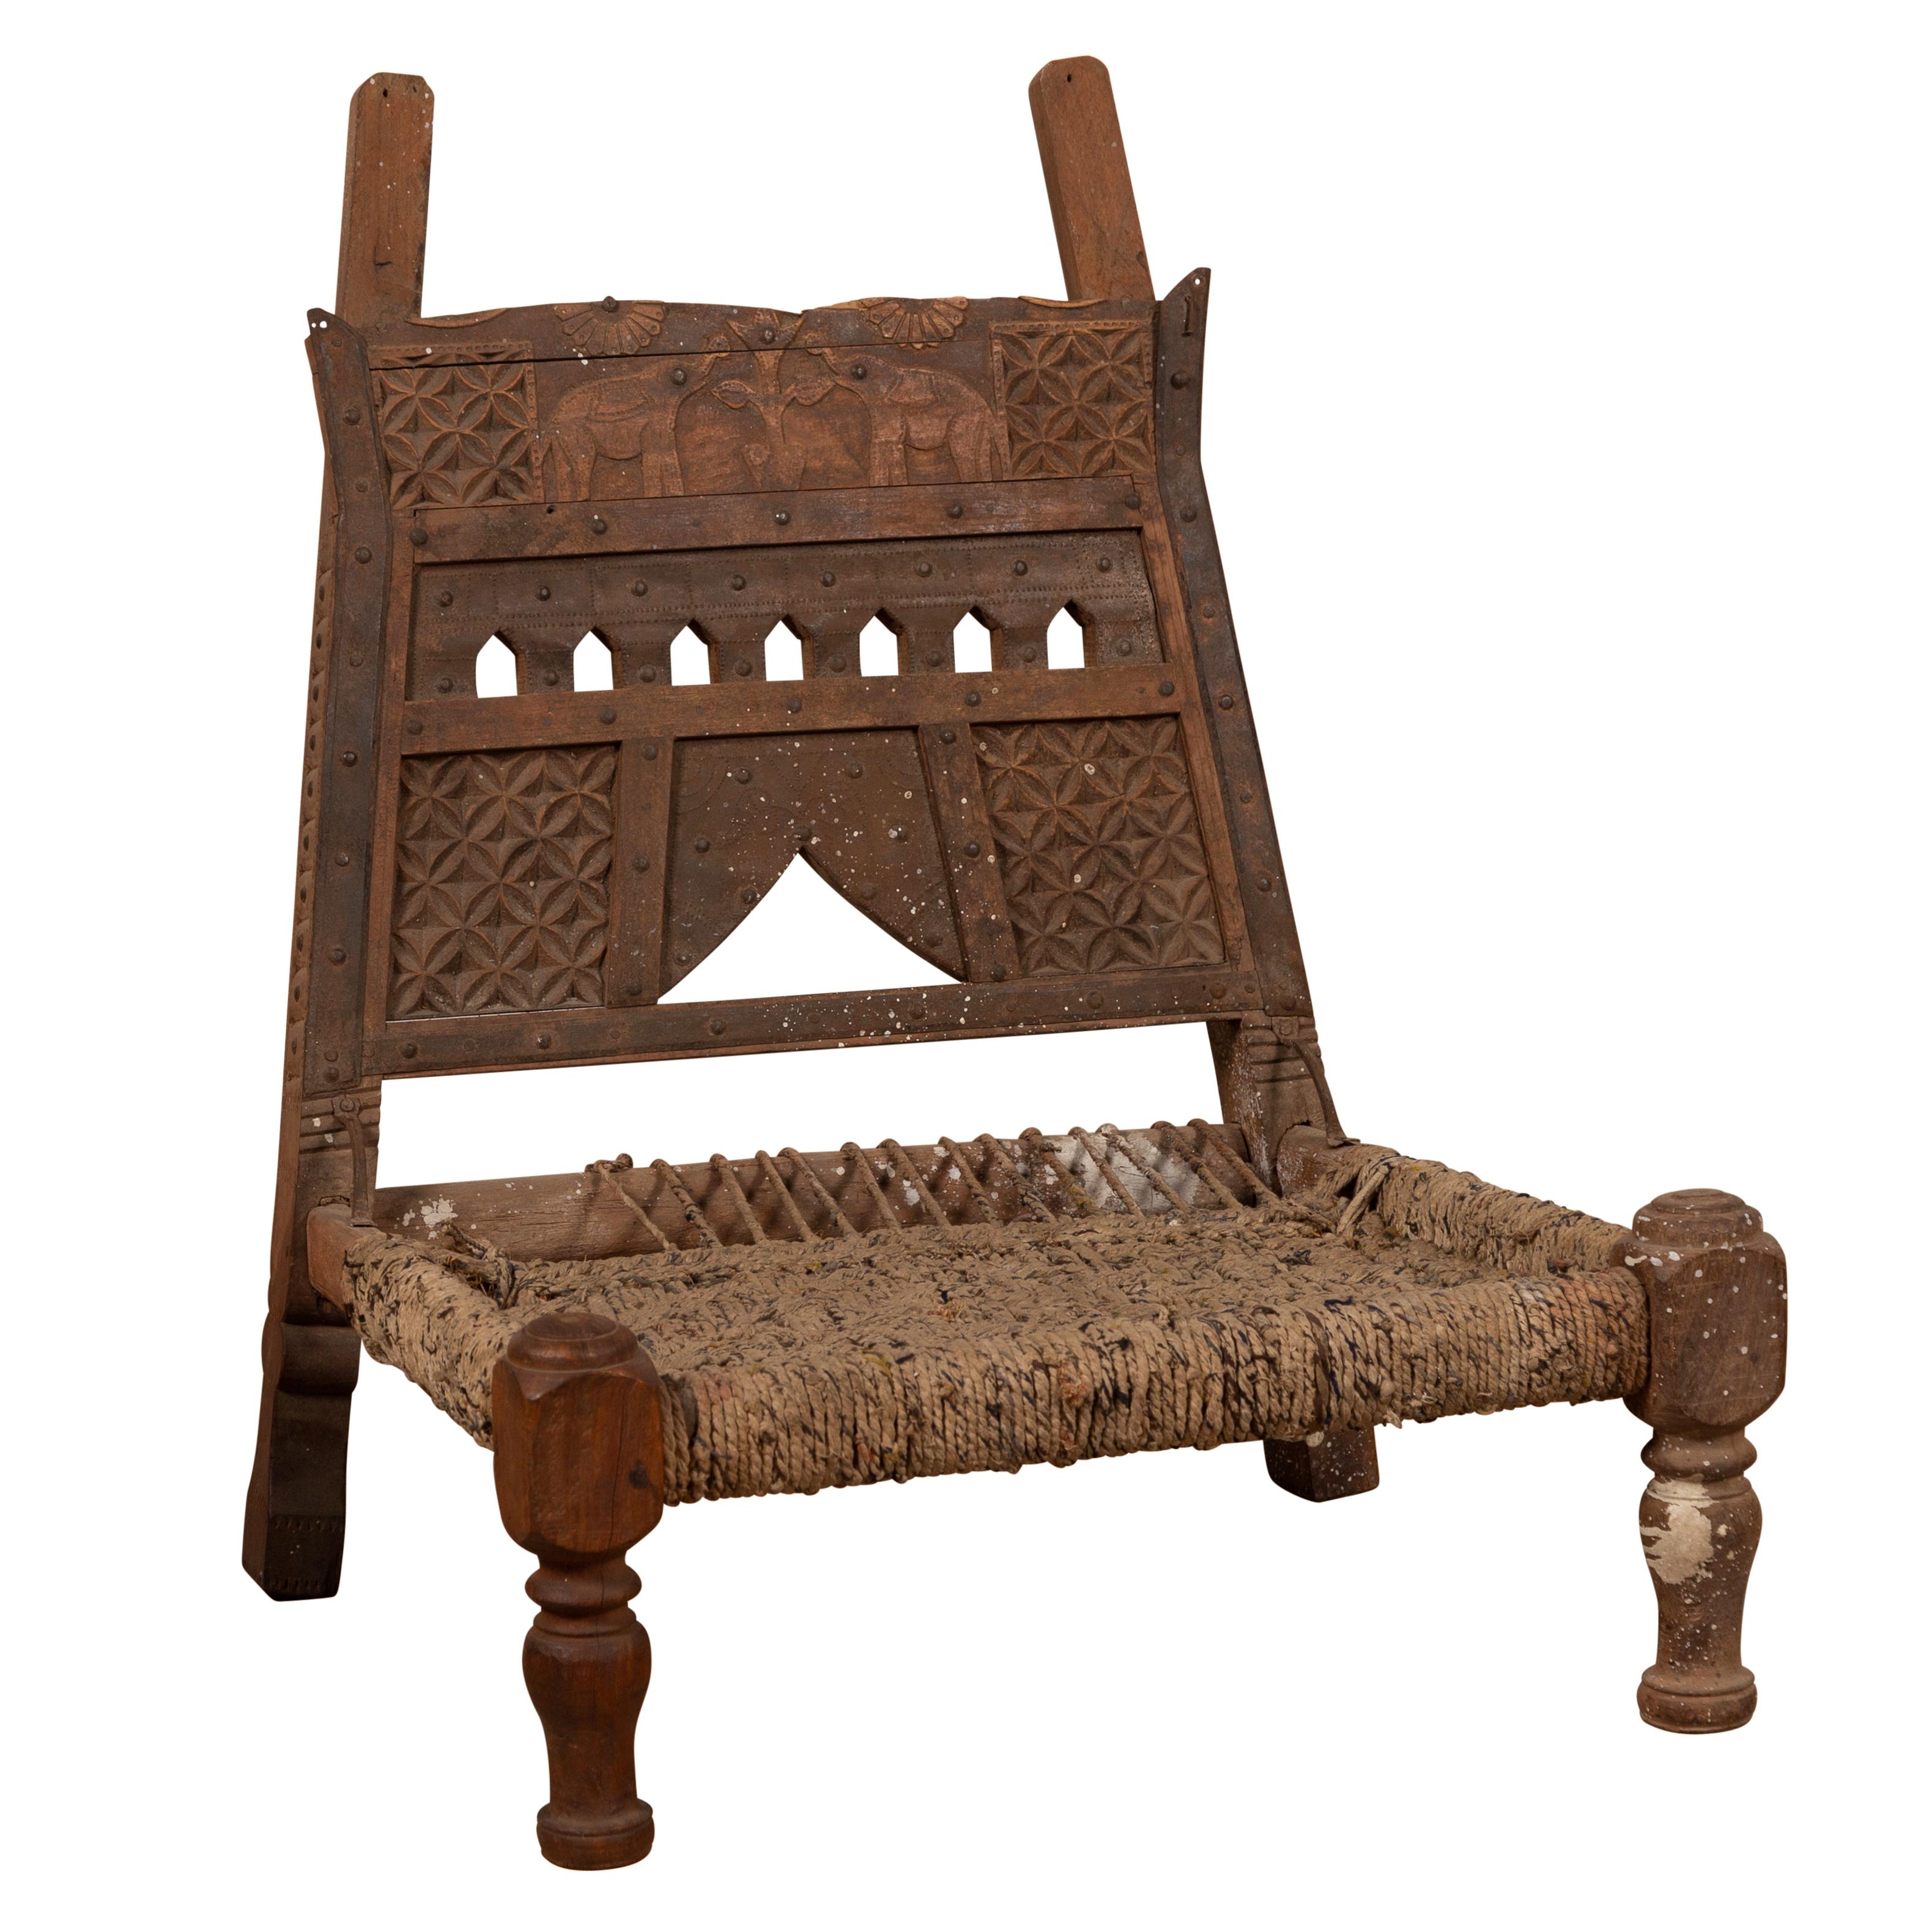 Chaise basse rustique indienne en bois avec assise en corde et aspect usé par le temps